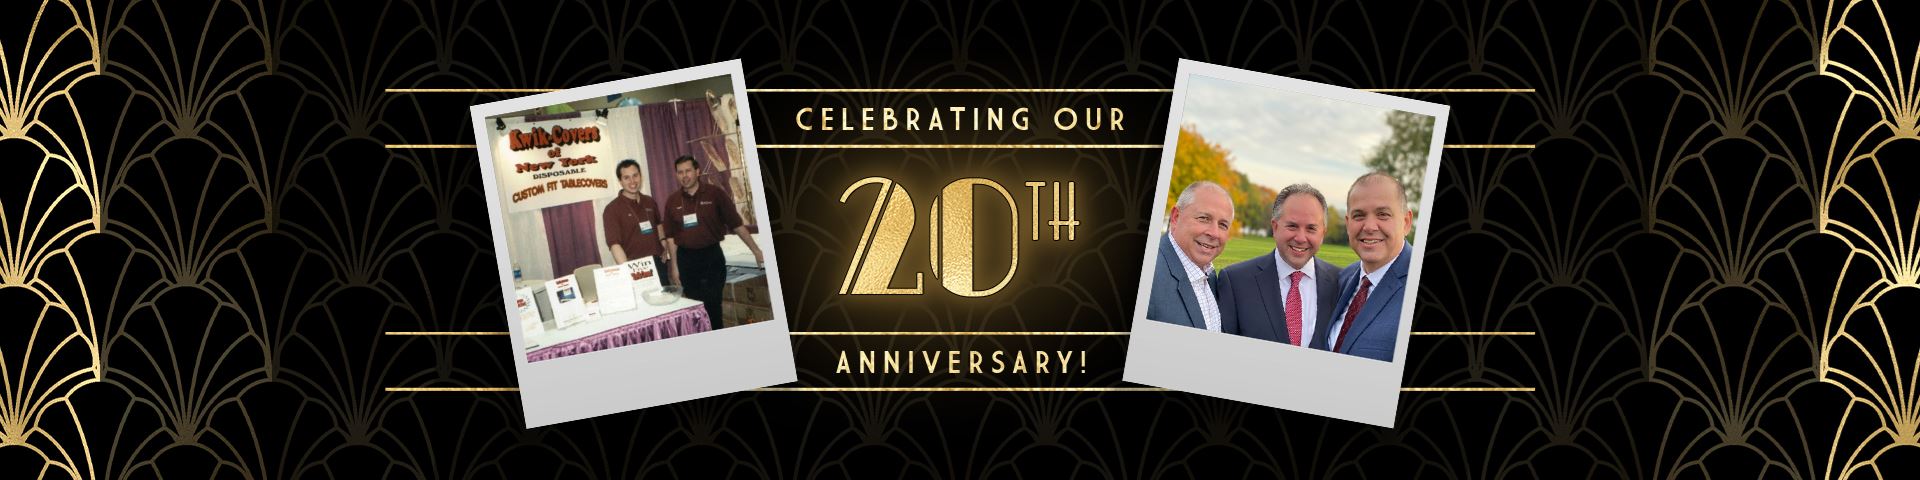 20th Anniversary - Celebrating 20 Years of Kwik-Covers